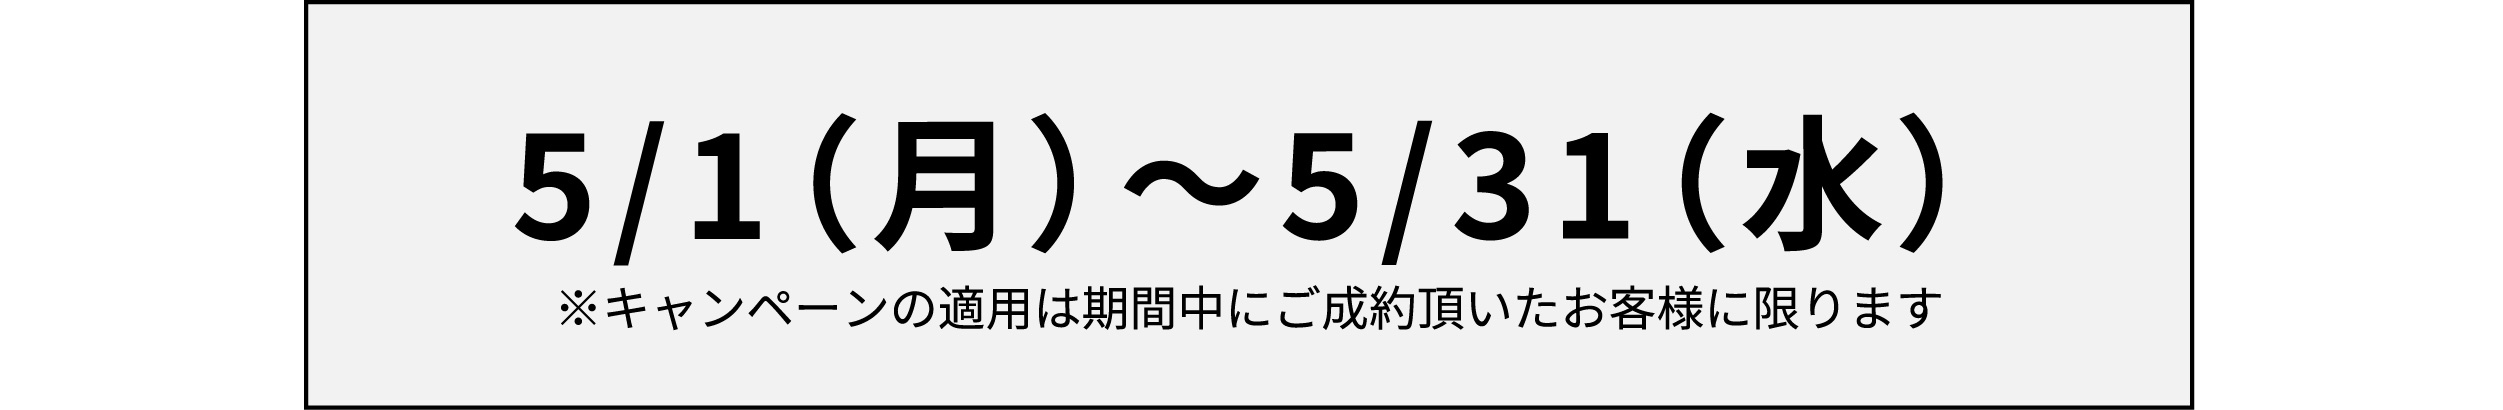 【5月限定キャンペーン】学生特典plus割